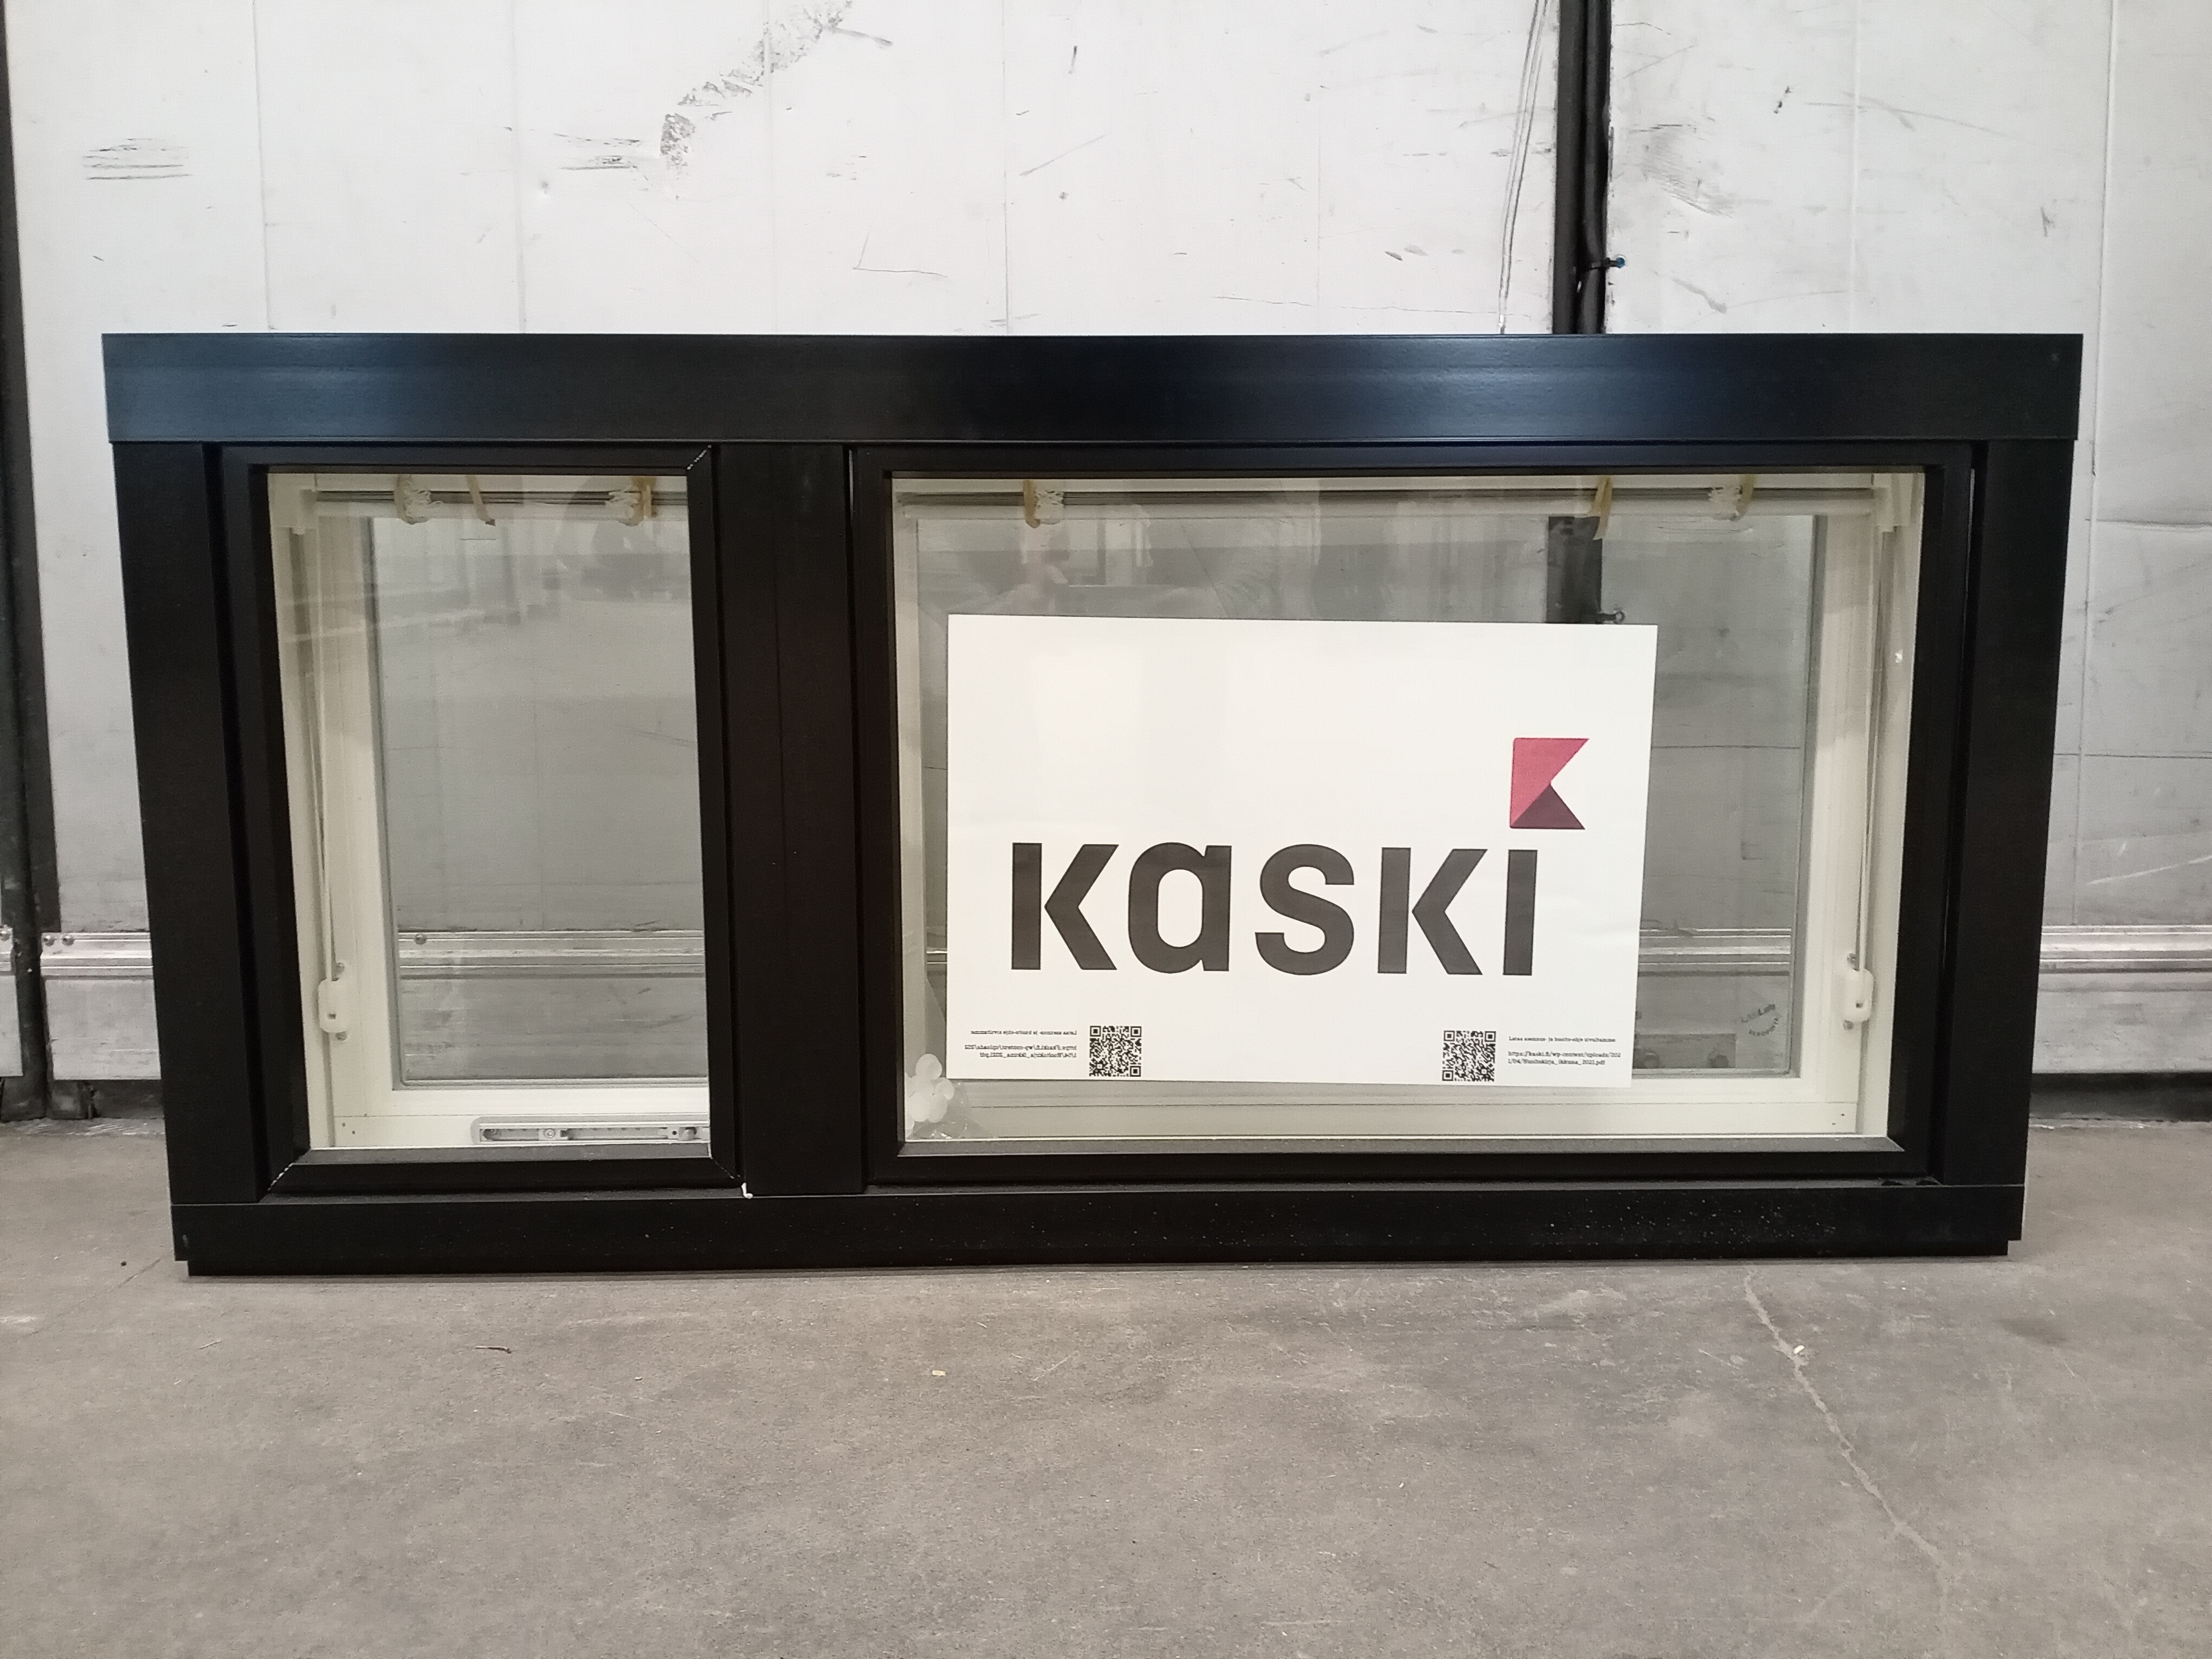 KP3896 Kaskipuu MSEA 170, 1190x590, Vit/svart, 12x6, VF